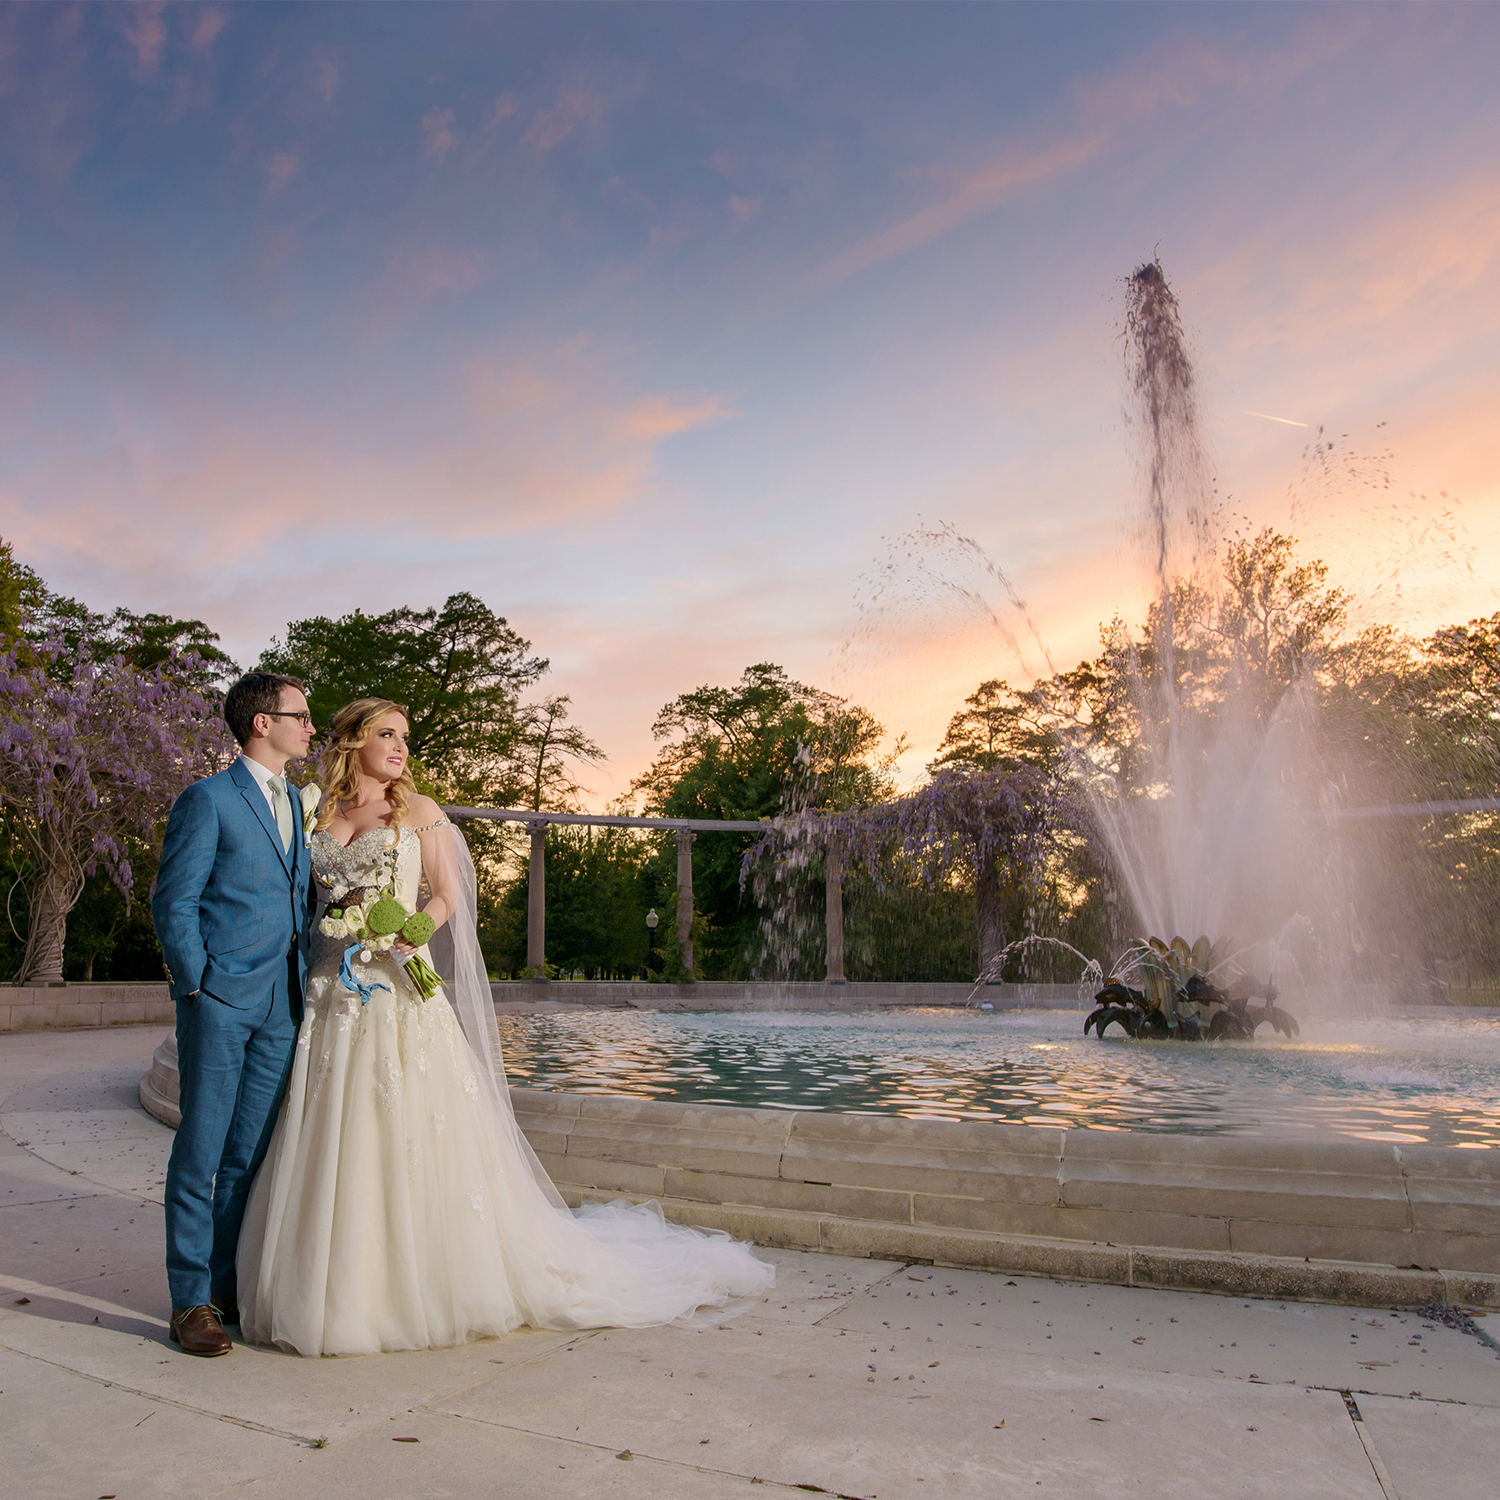 Popps Fountain Arbor Room City Park Wedding Photographs | Amy & Lowry